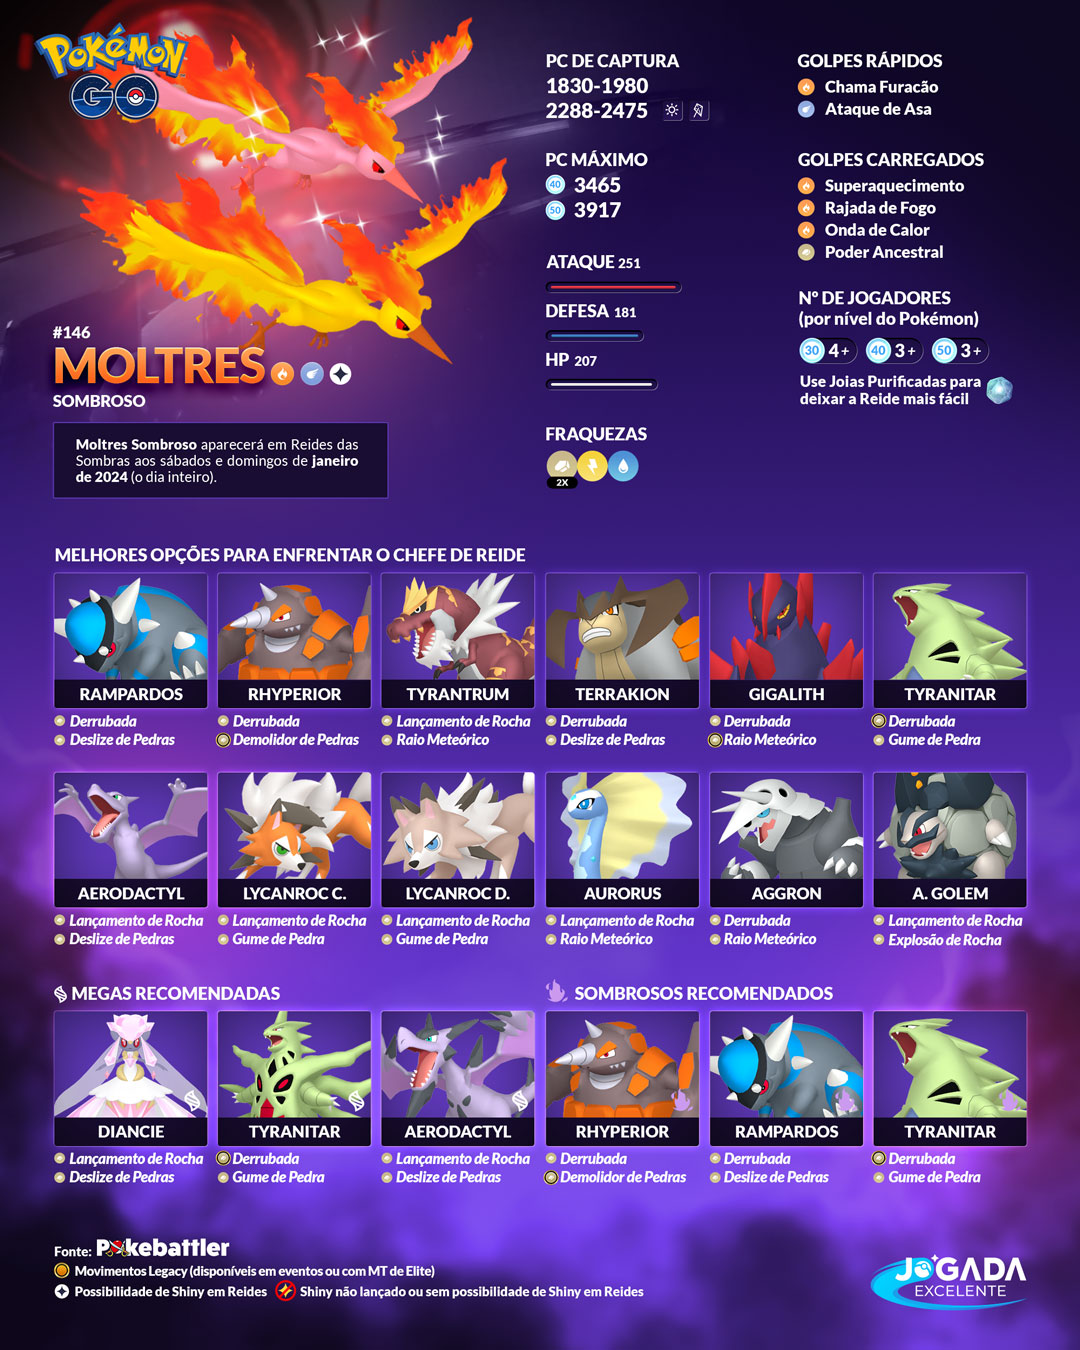 Moltres Sombroso em Reides 5 Estrelas no Pokémon GO - Jogada Excelente